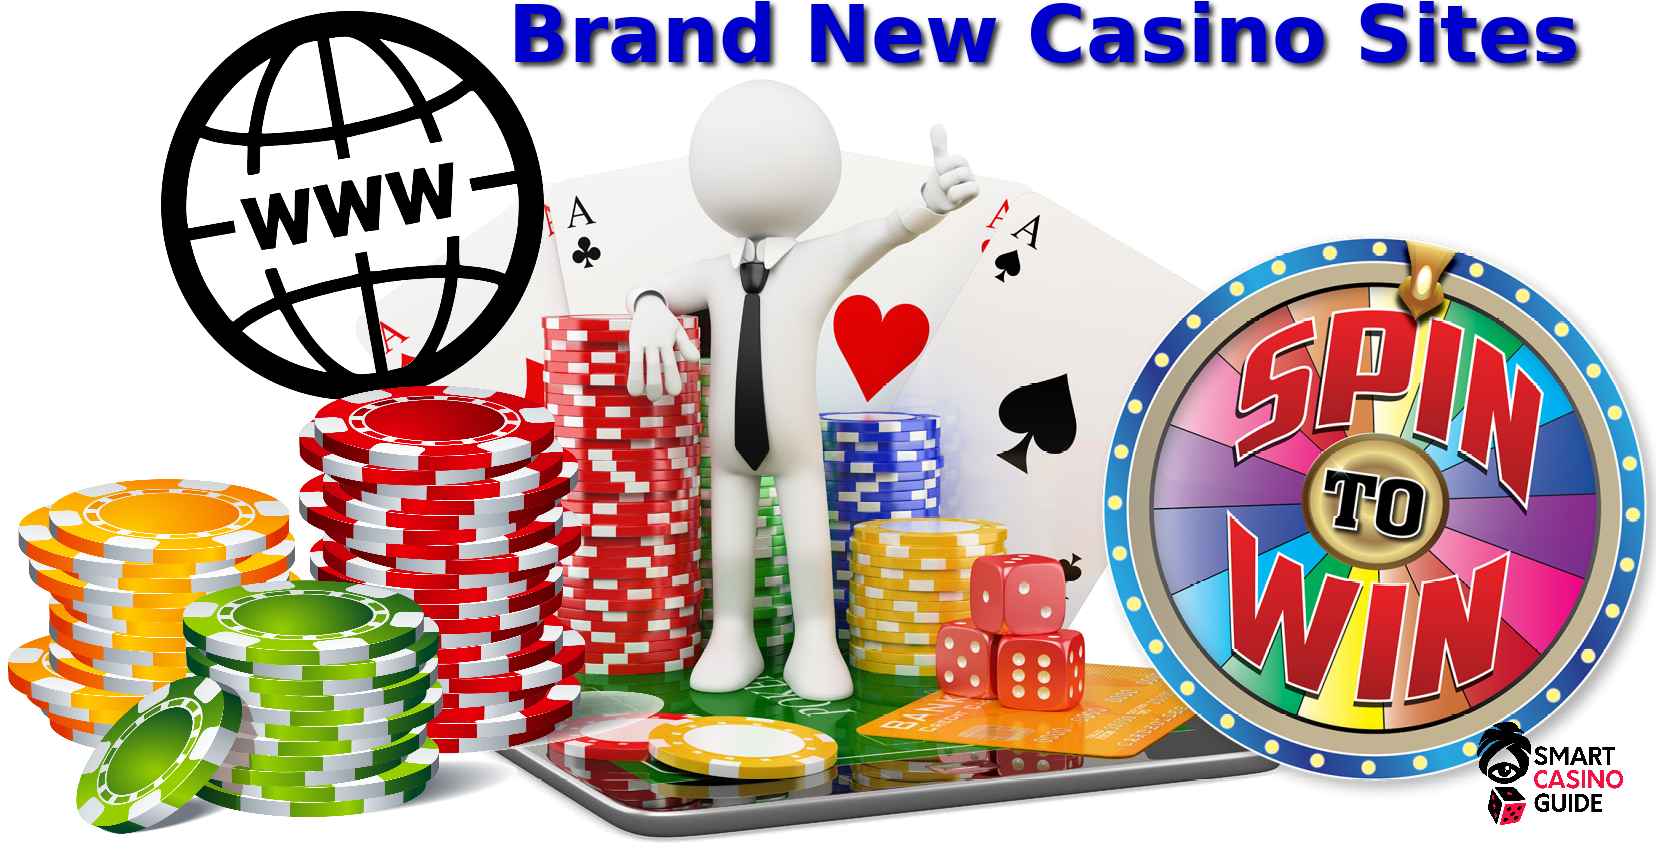 New casino 2022 форум джипситим покердом контрольчестности рф